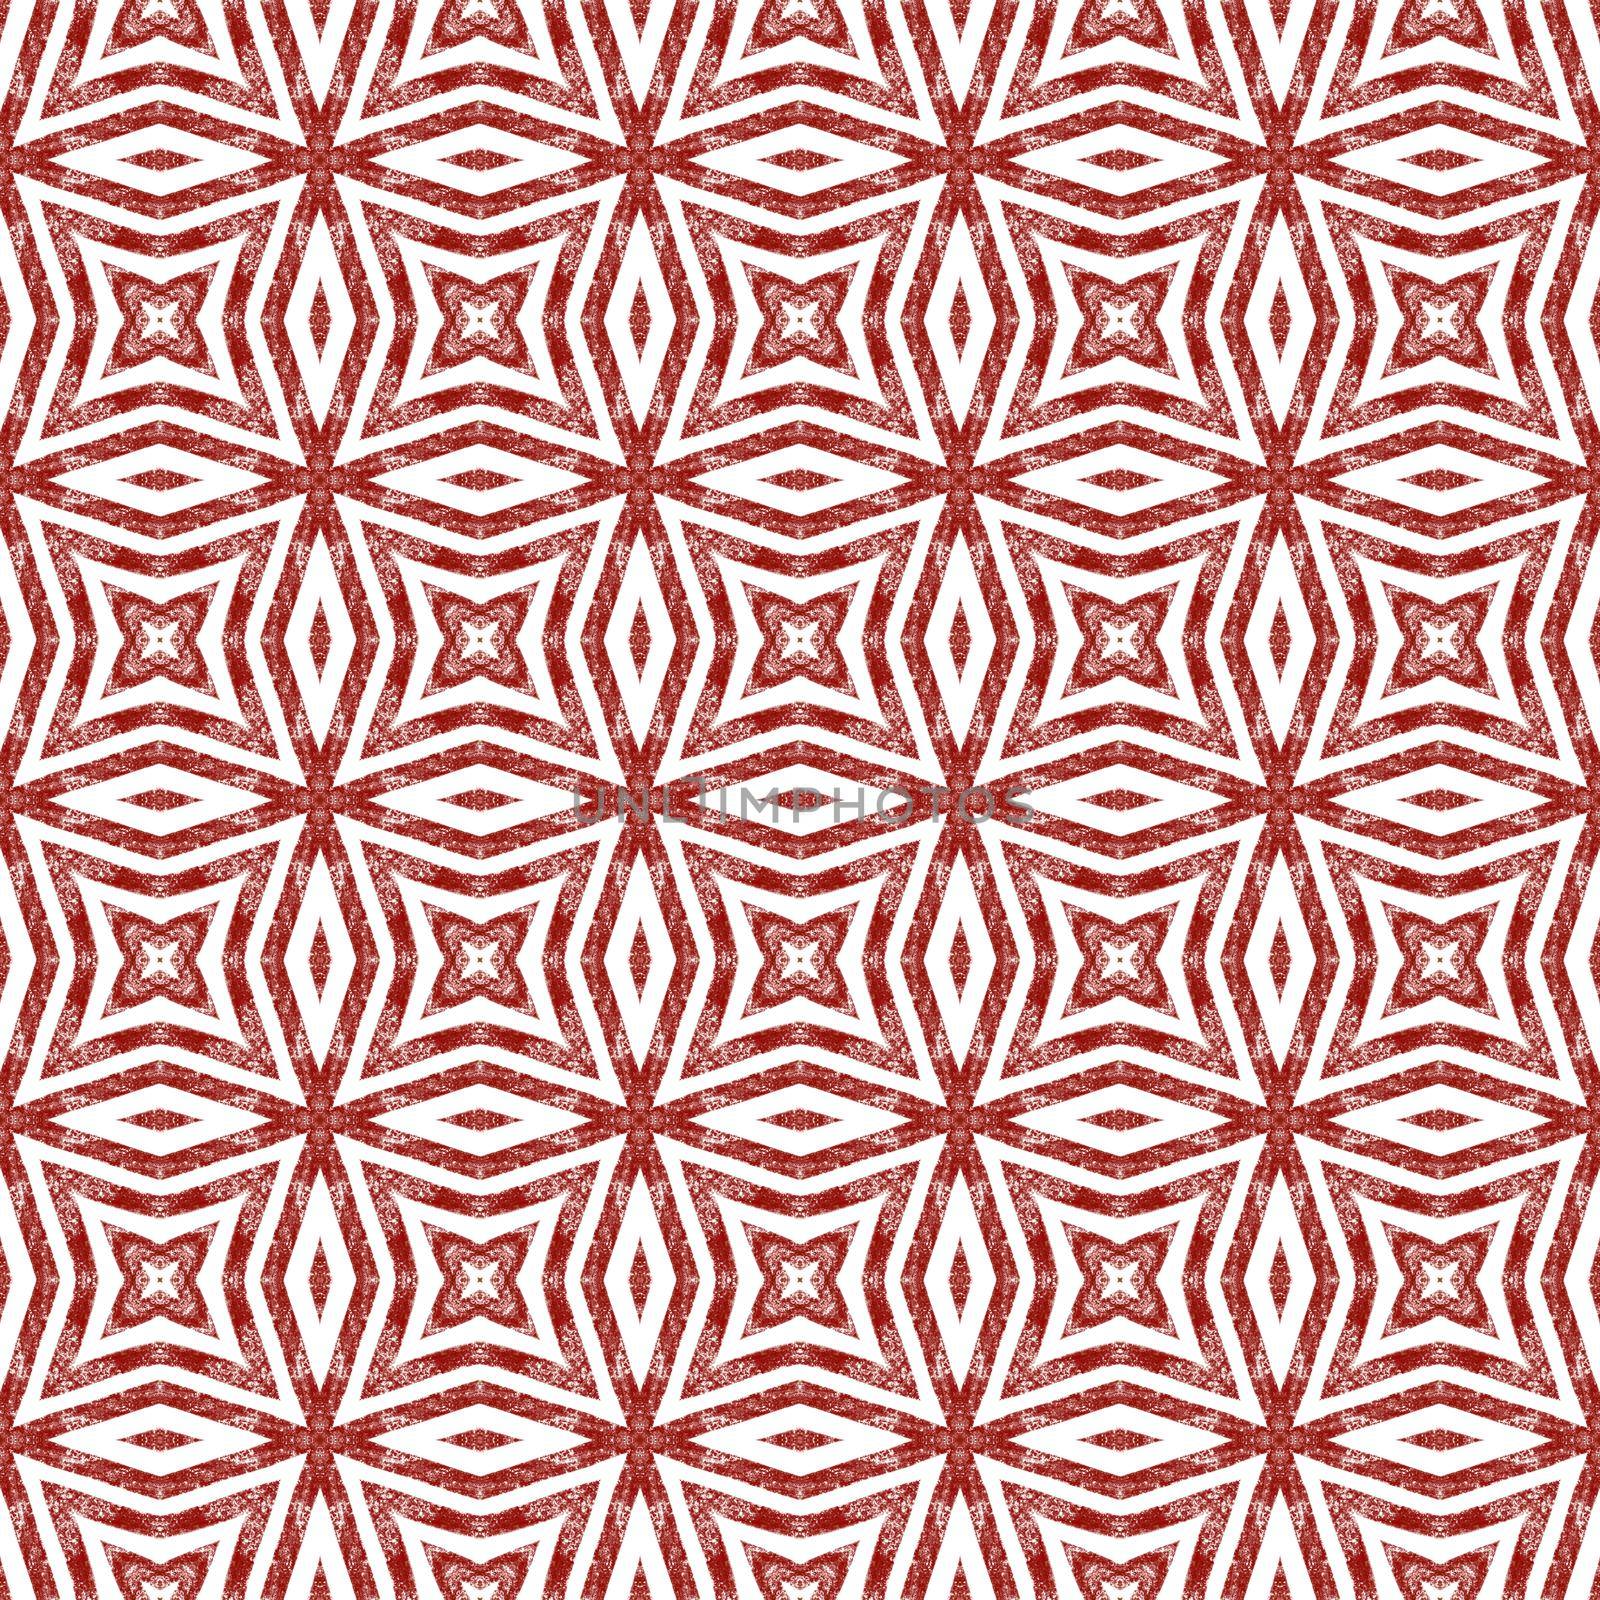 Arabesque hand drawn pattern. Wine red by beginagain